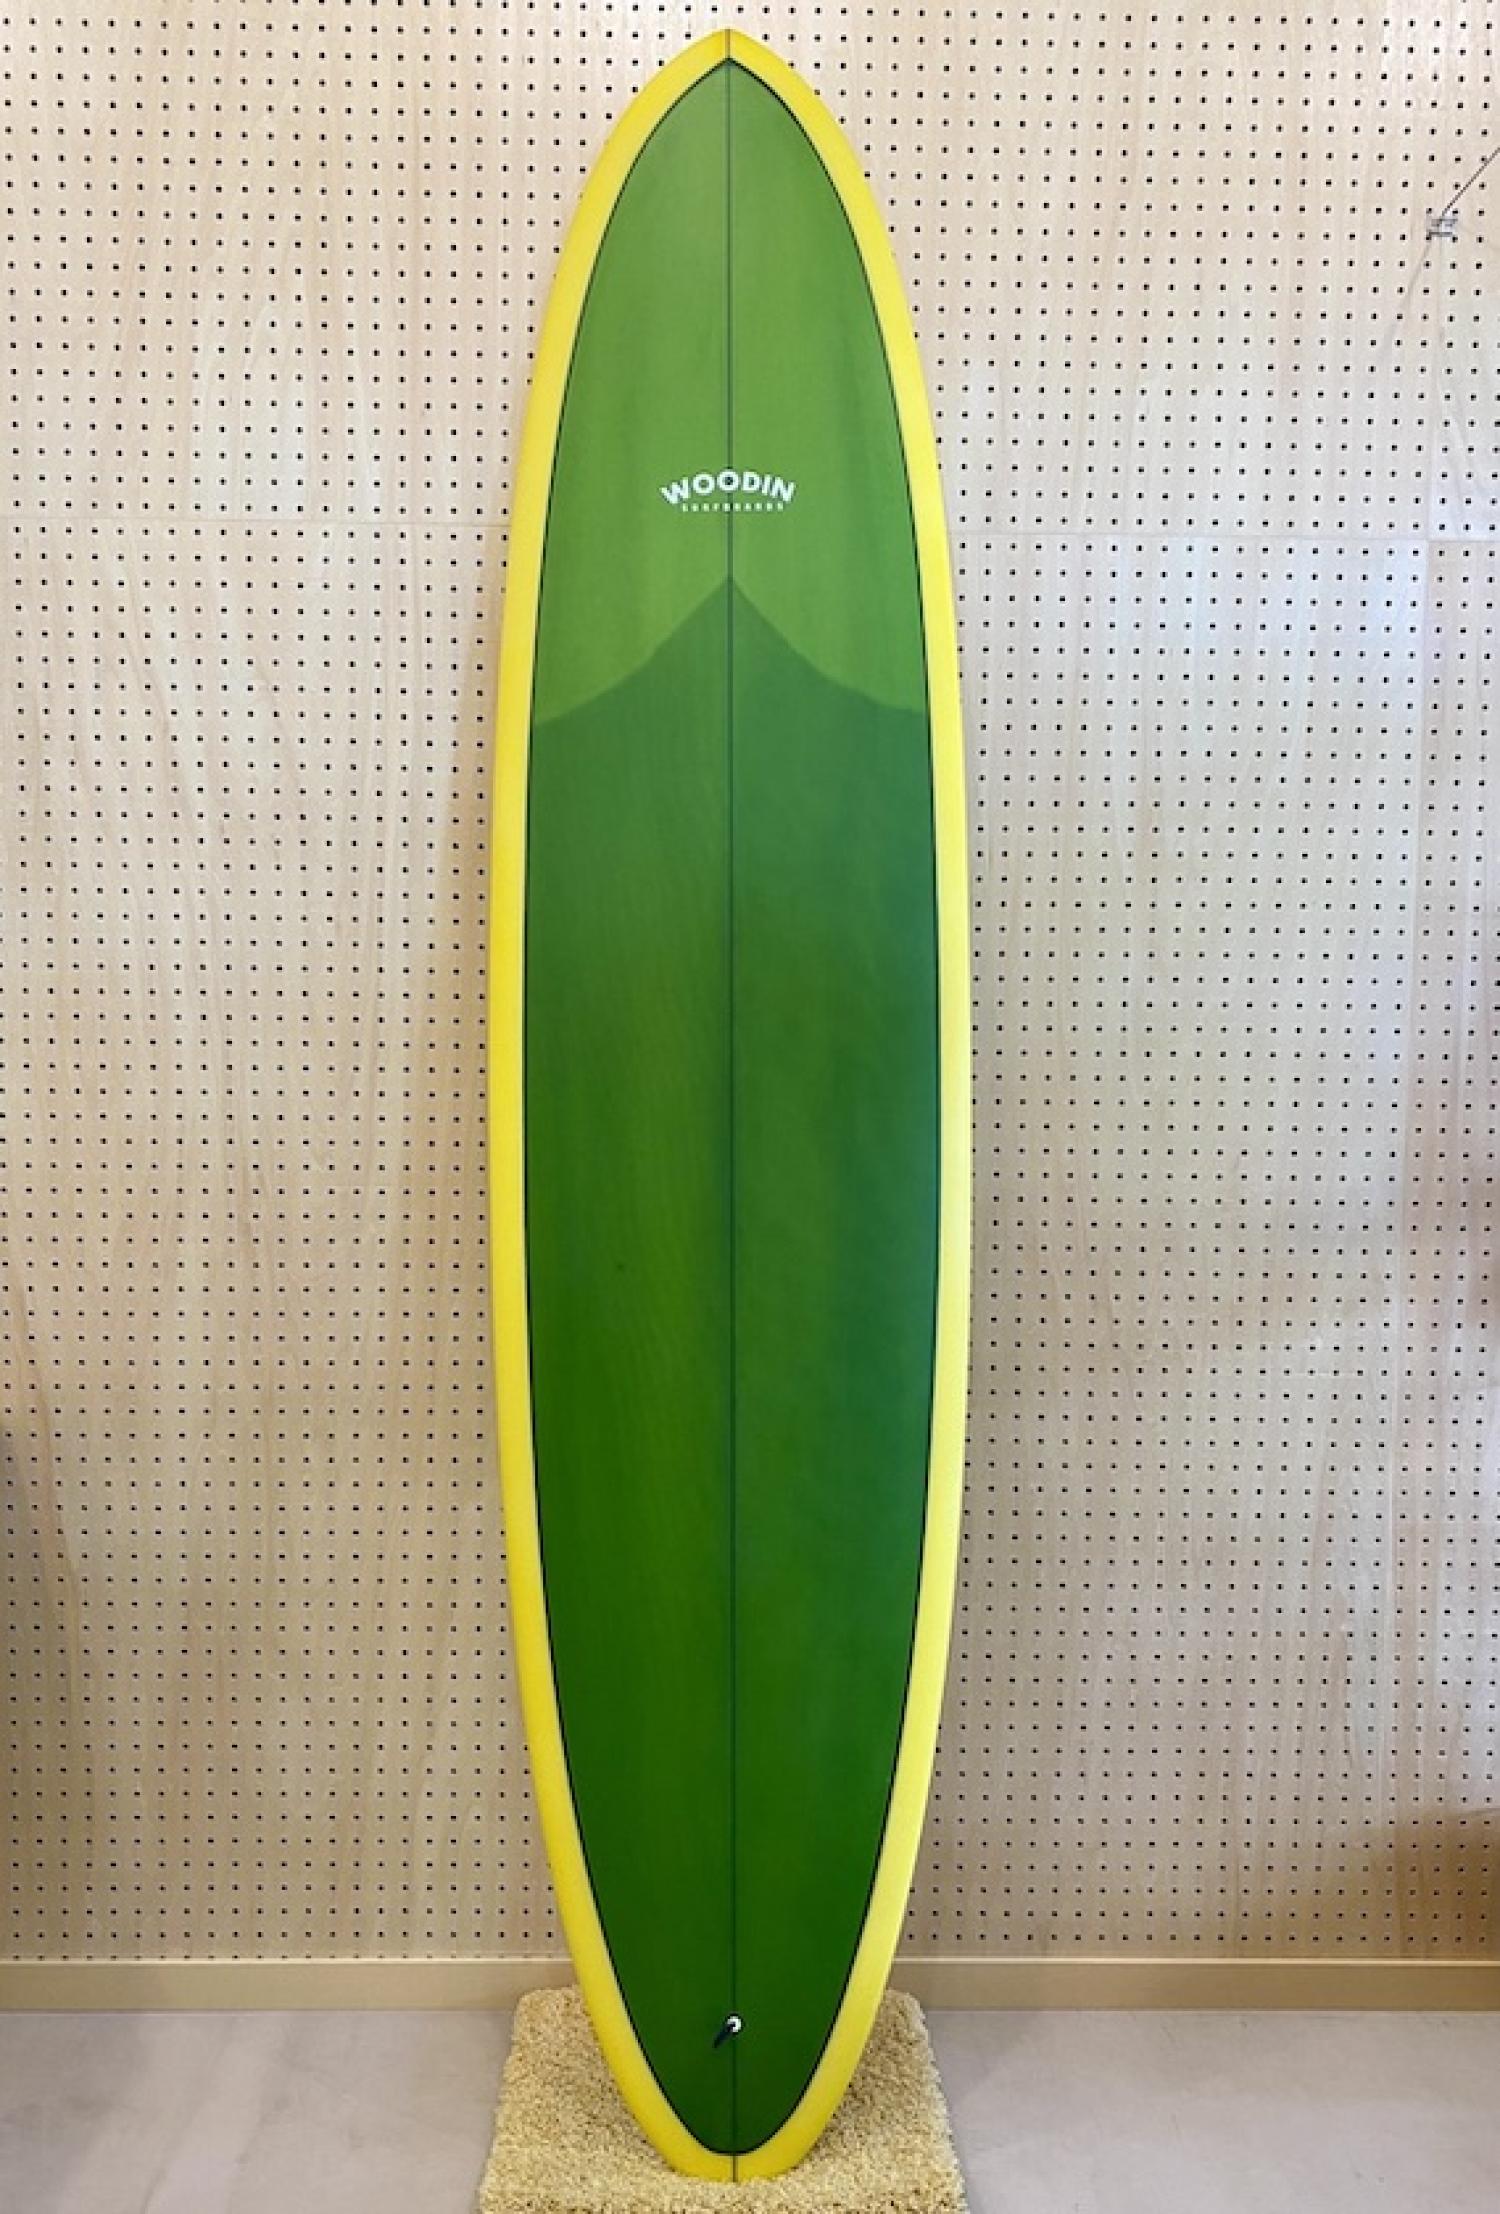 Gypsy Eye model 7.10 WOODIN SURFBOARDS